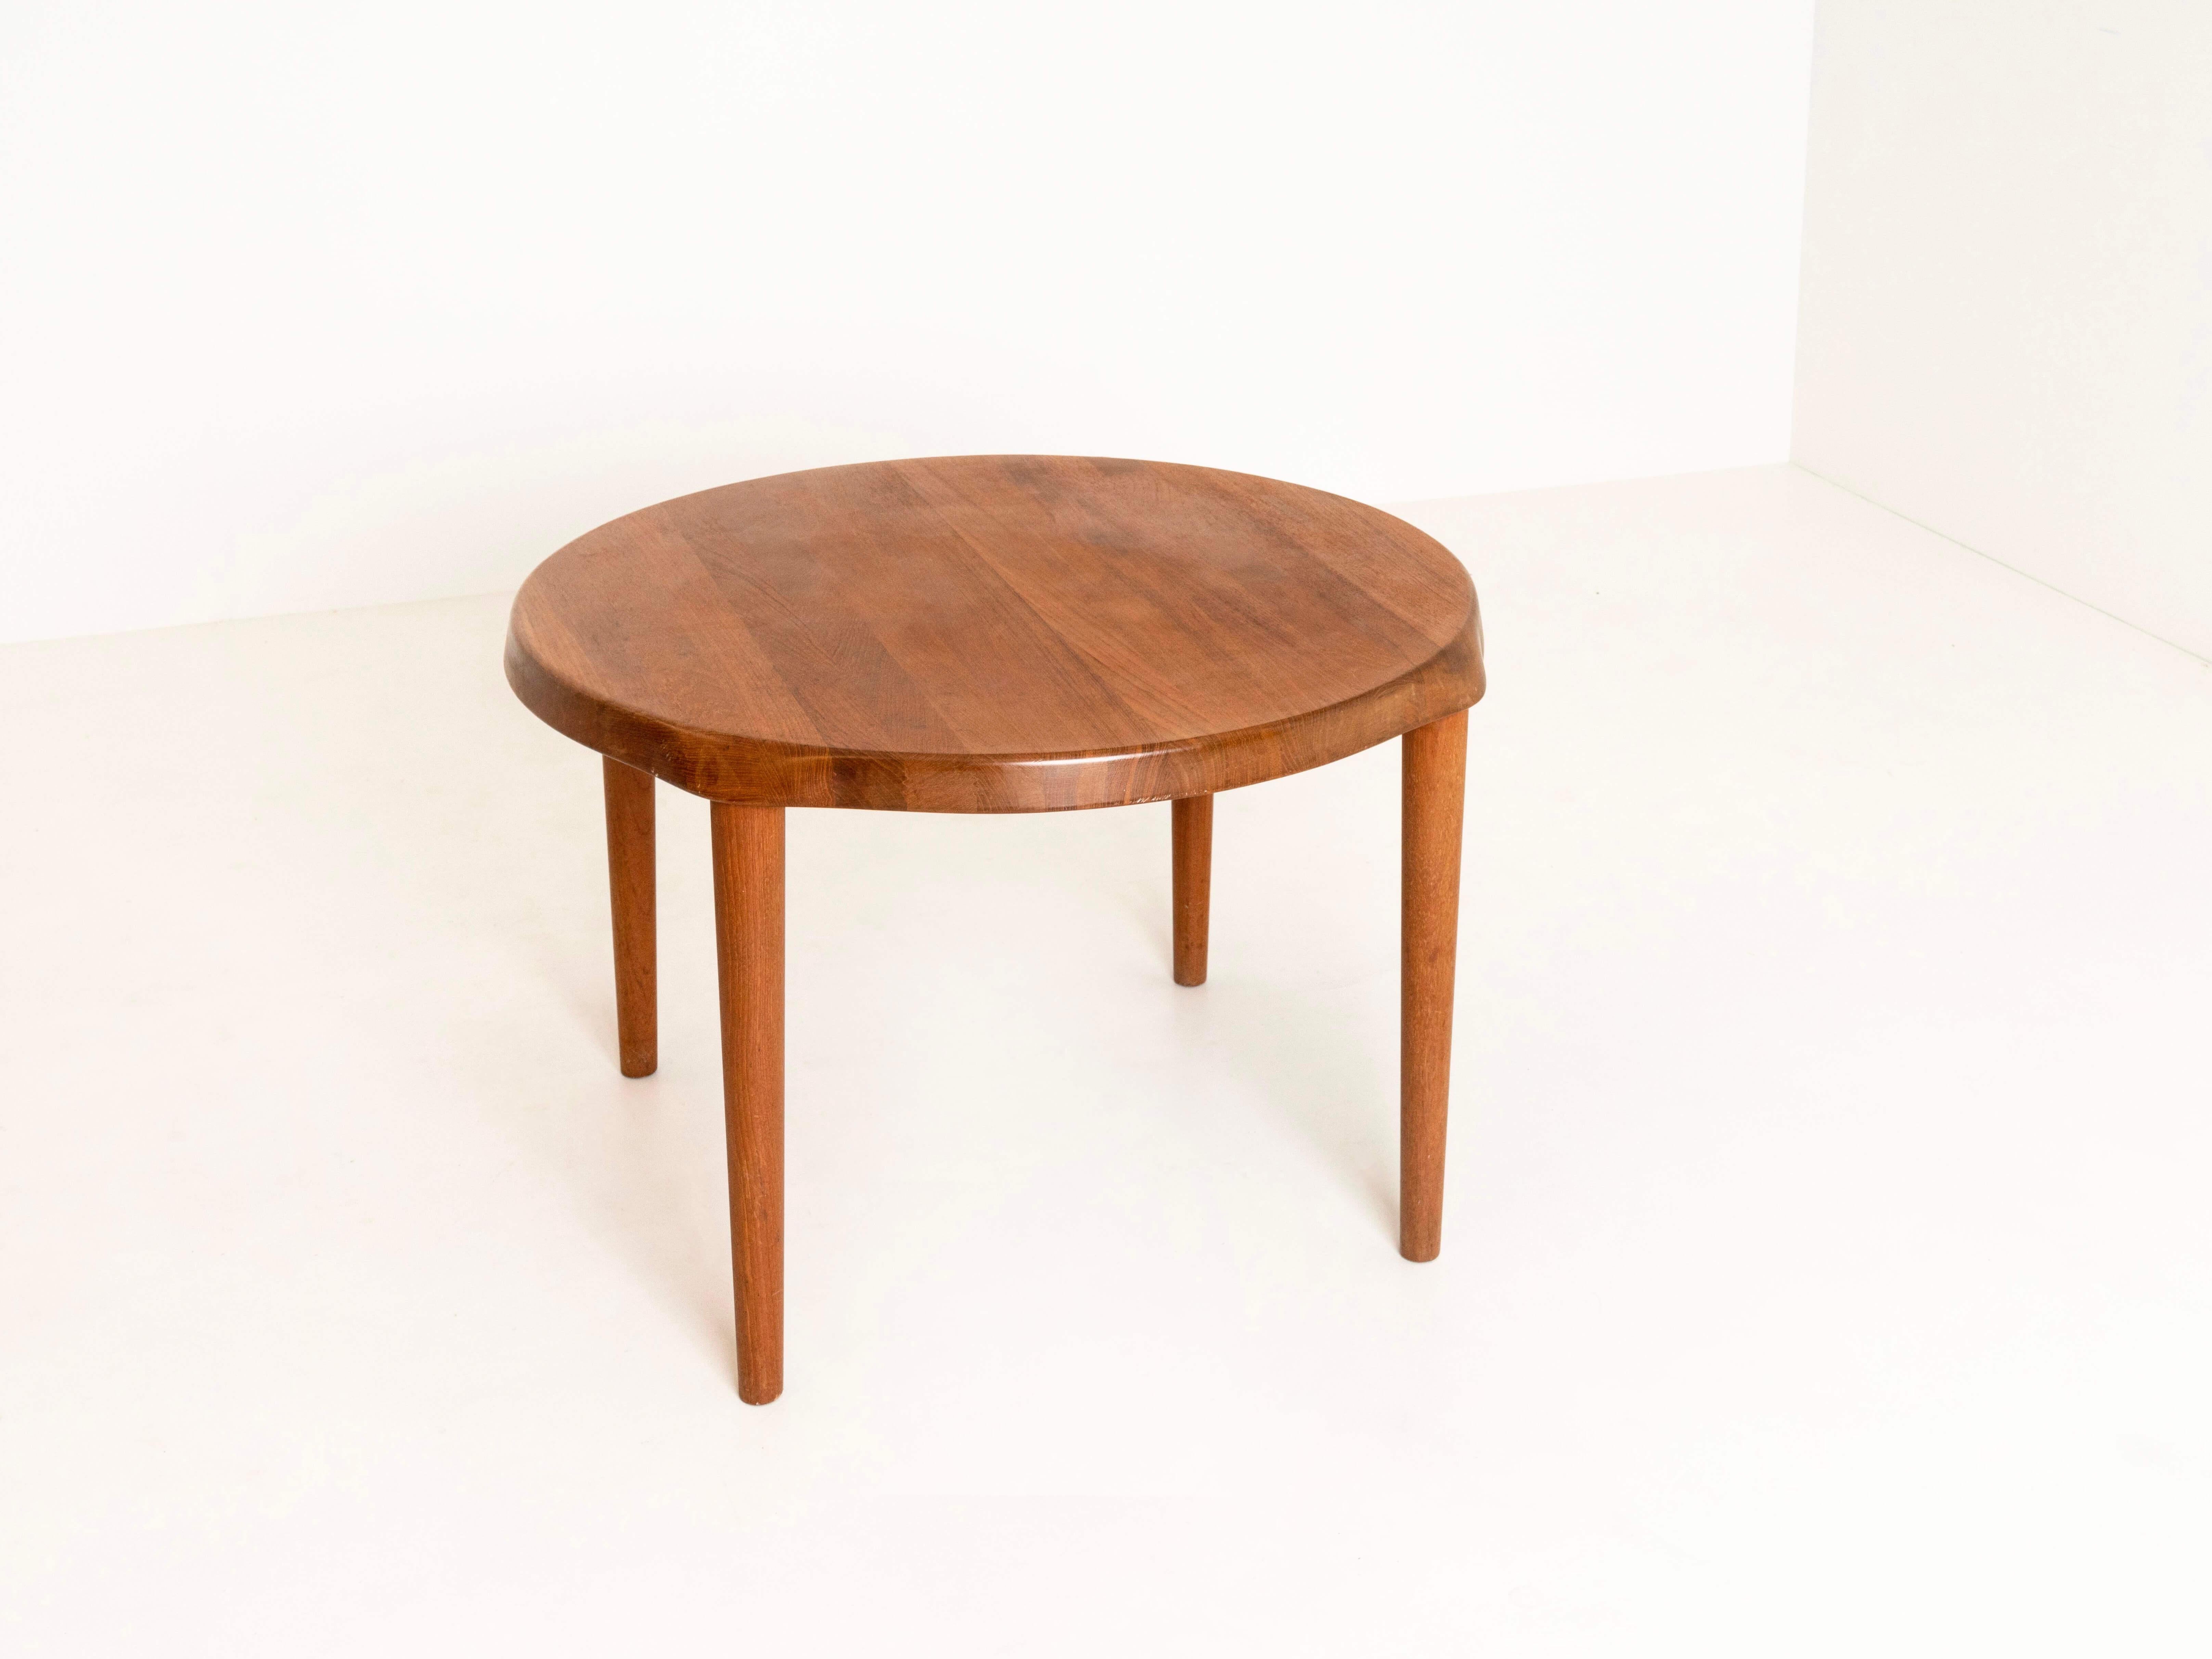 Scandinavian Modern Teak Round Coffee Table by John Boné for Mikael Laursen, Denmark 1960s